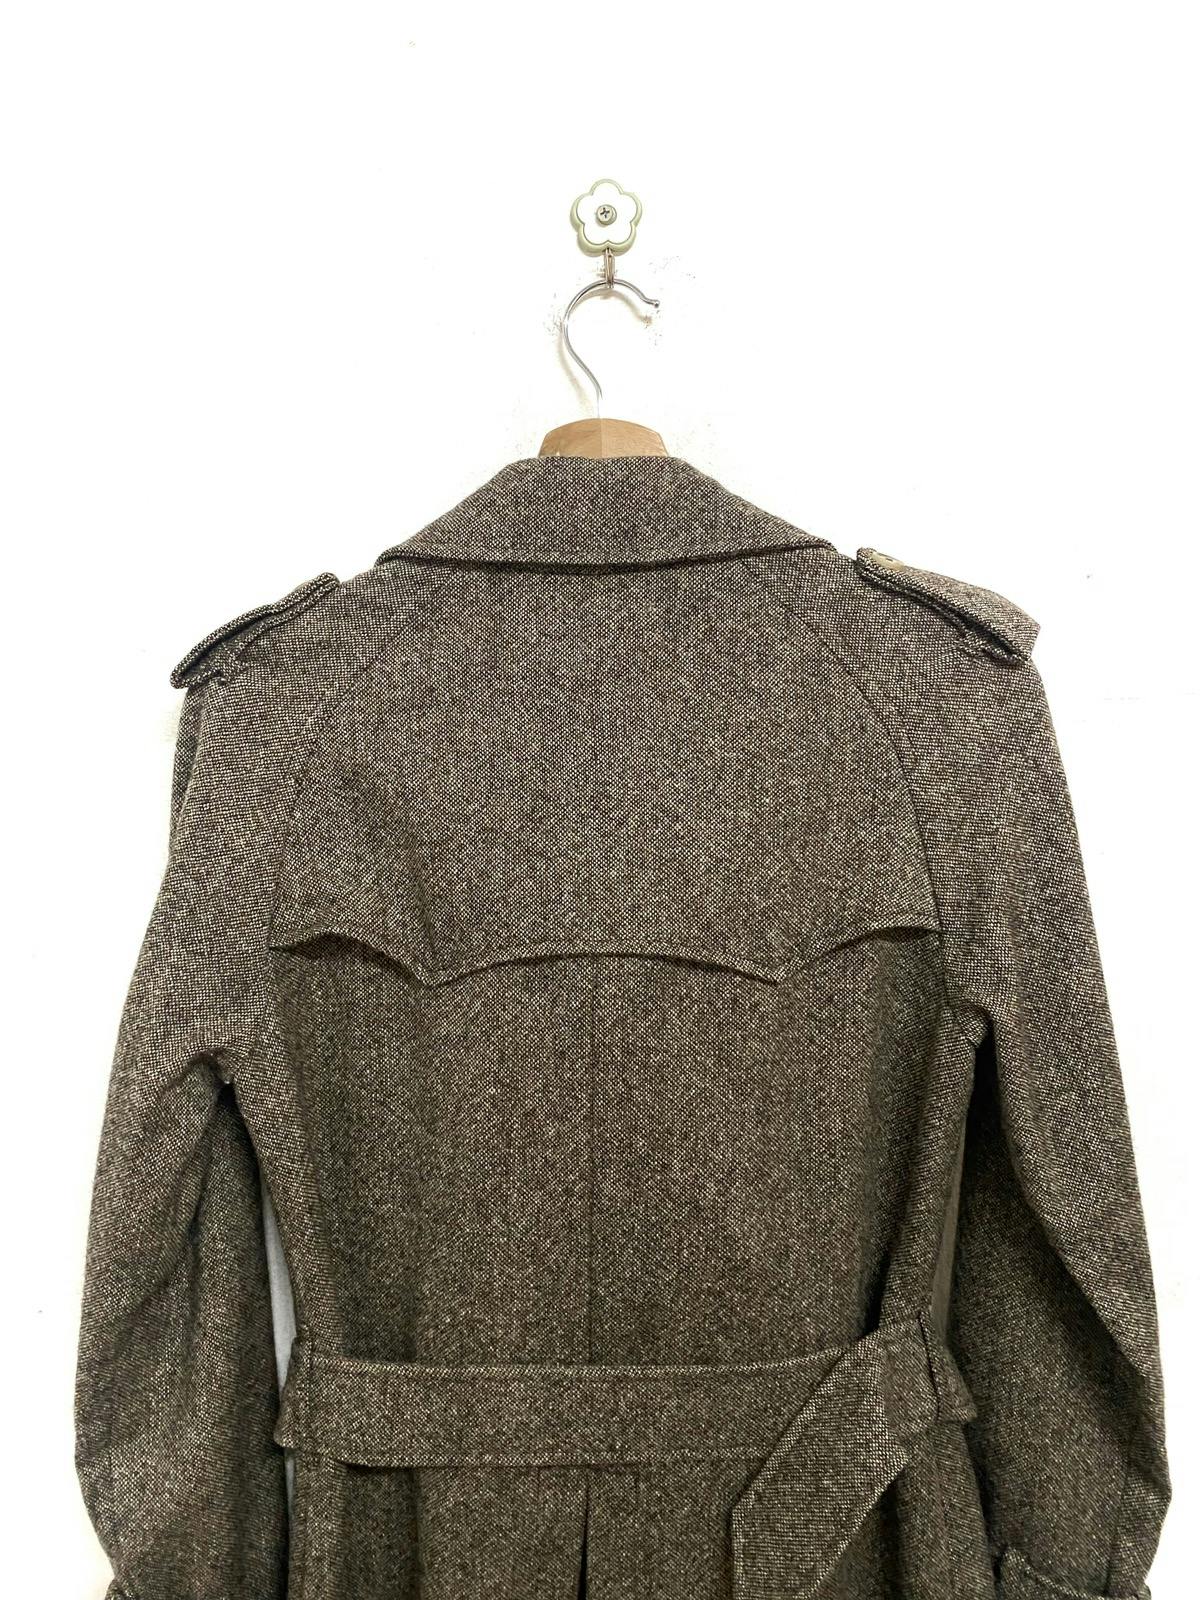 Mackintosh Herringbone Wool Coat Made in Scotland - 10